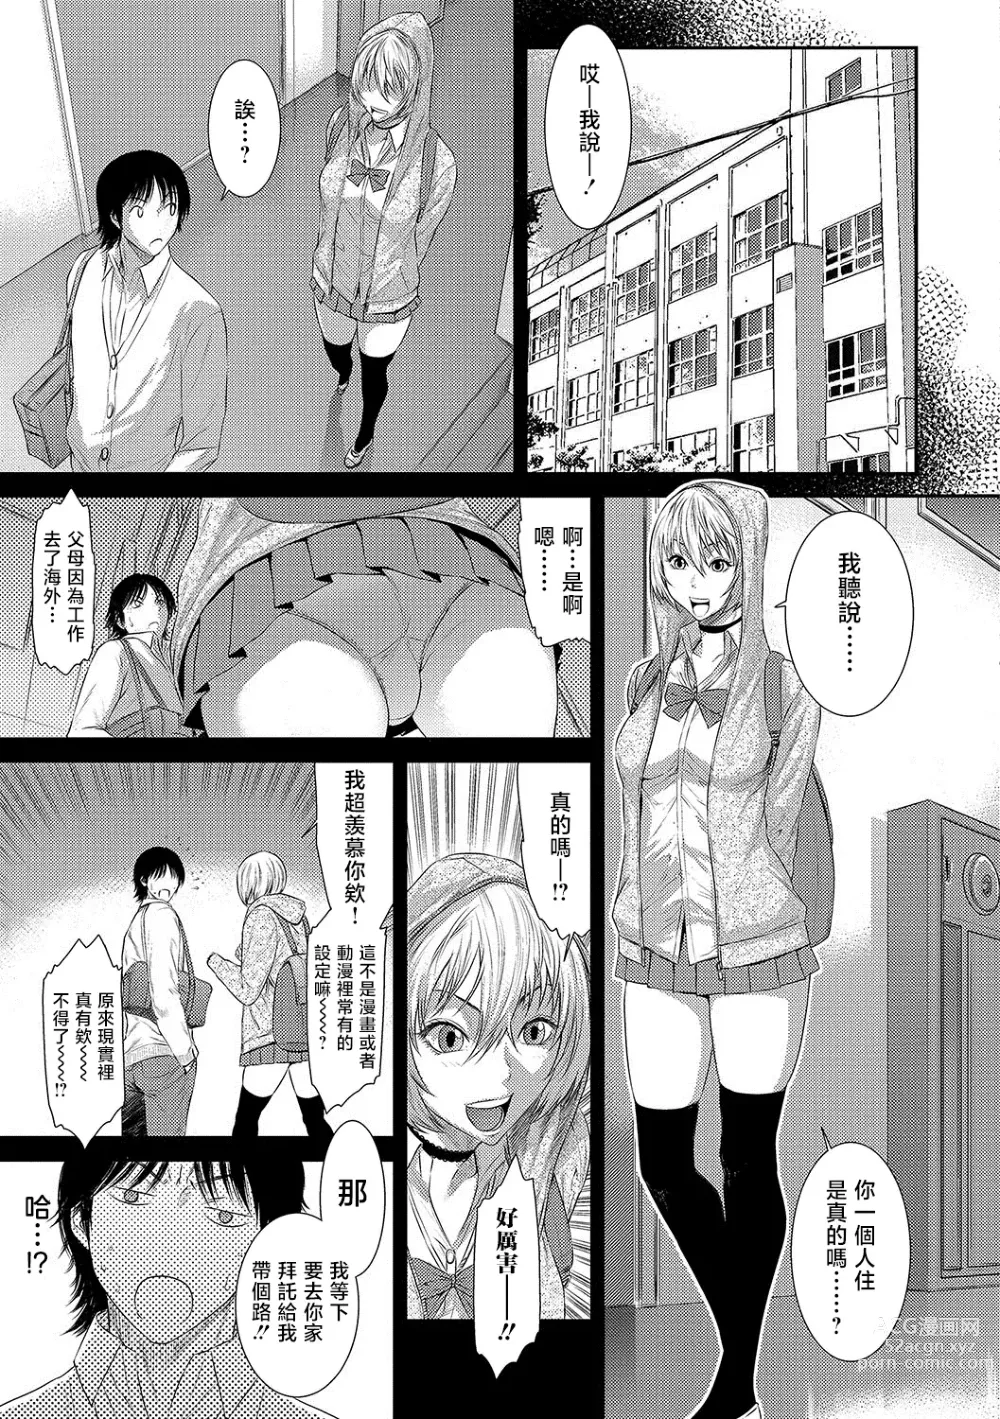 Page 3 of manga Classmate